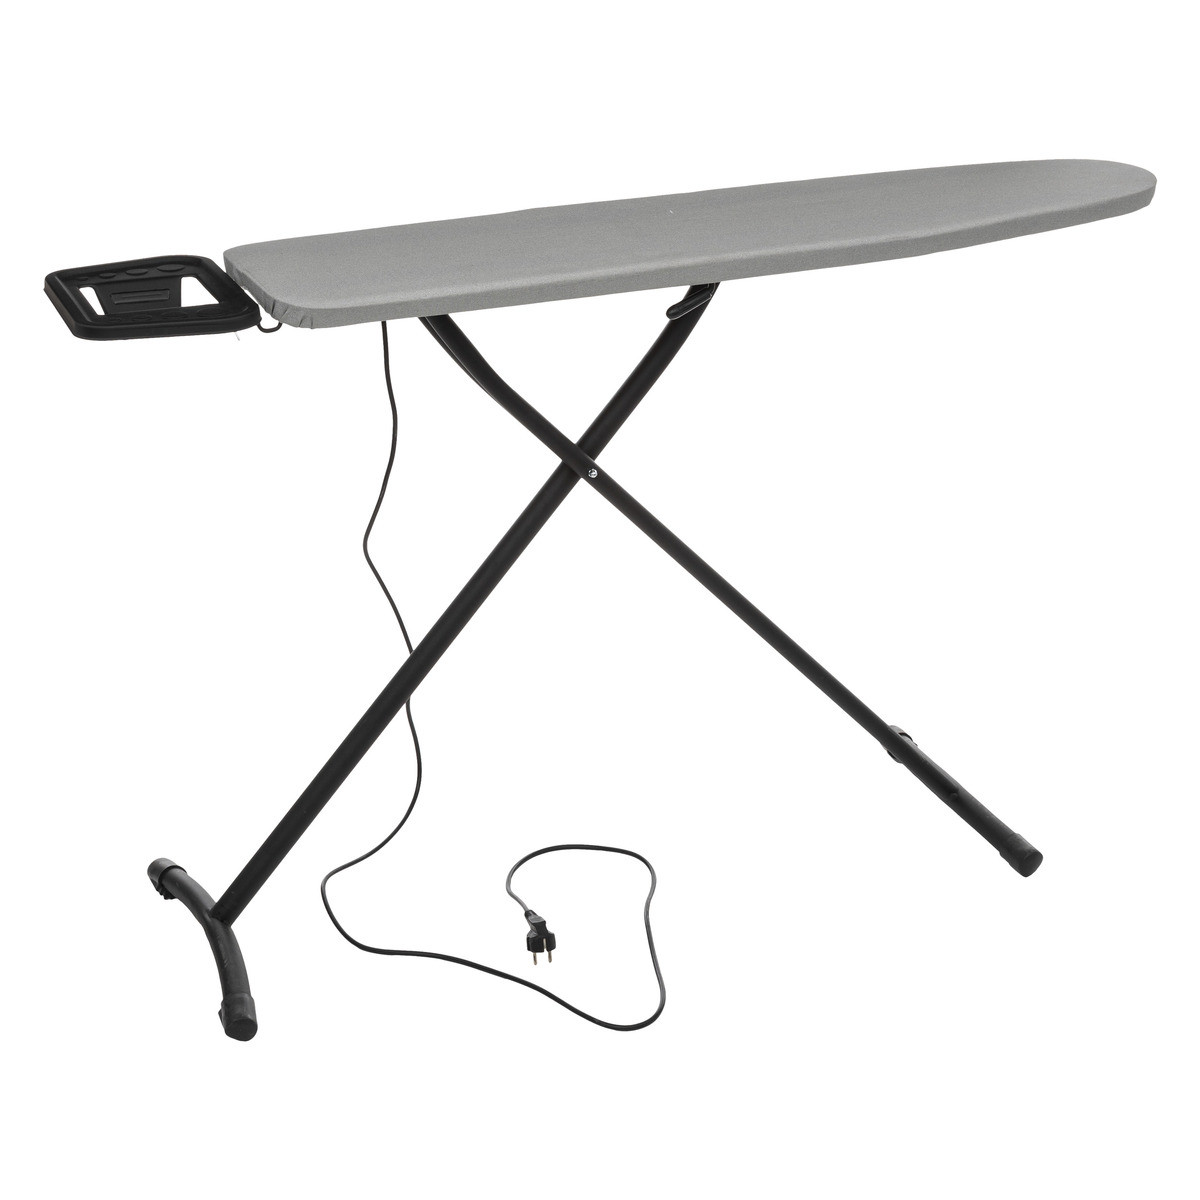 Housse - 484000008535 - 122 x 42 cm table à repasser WPRO, Motif